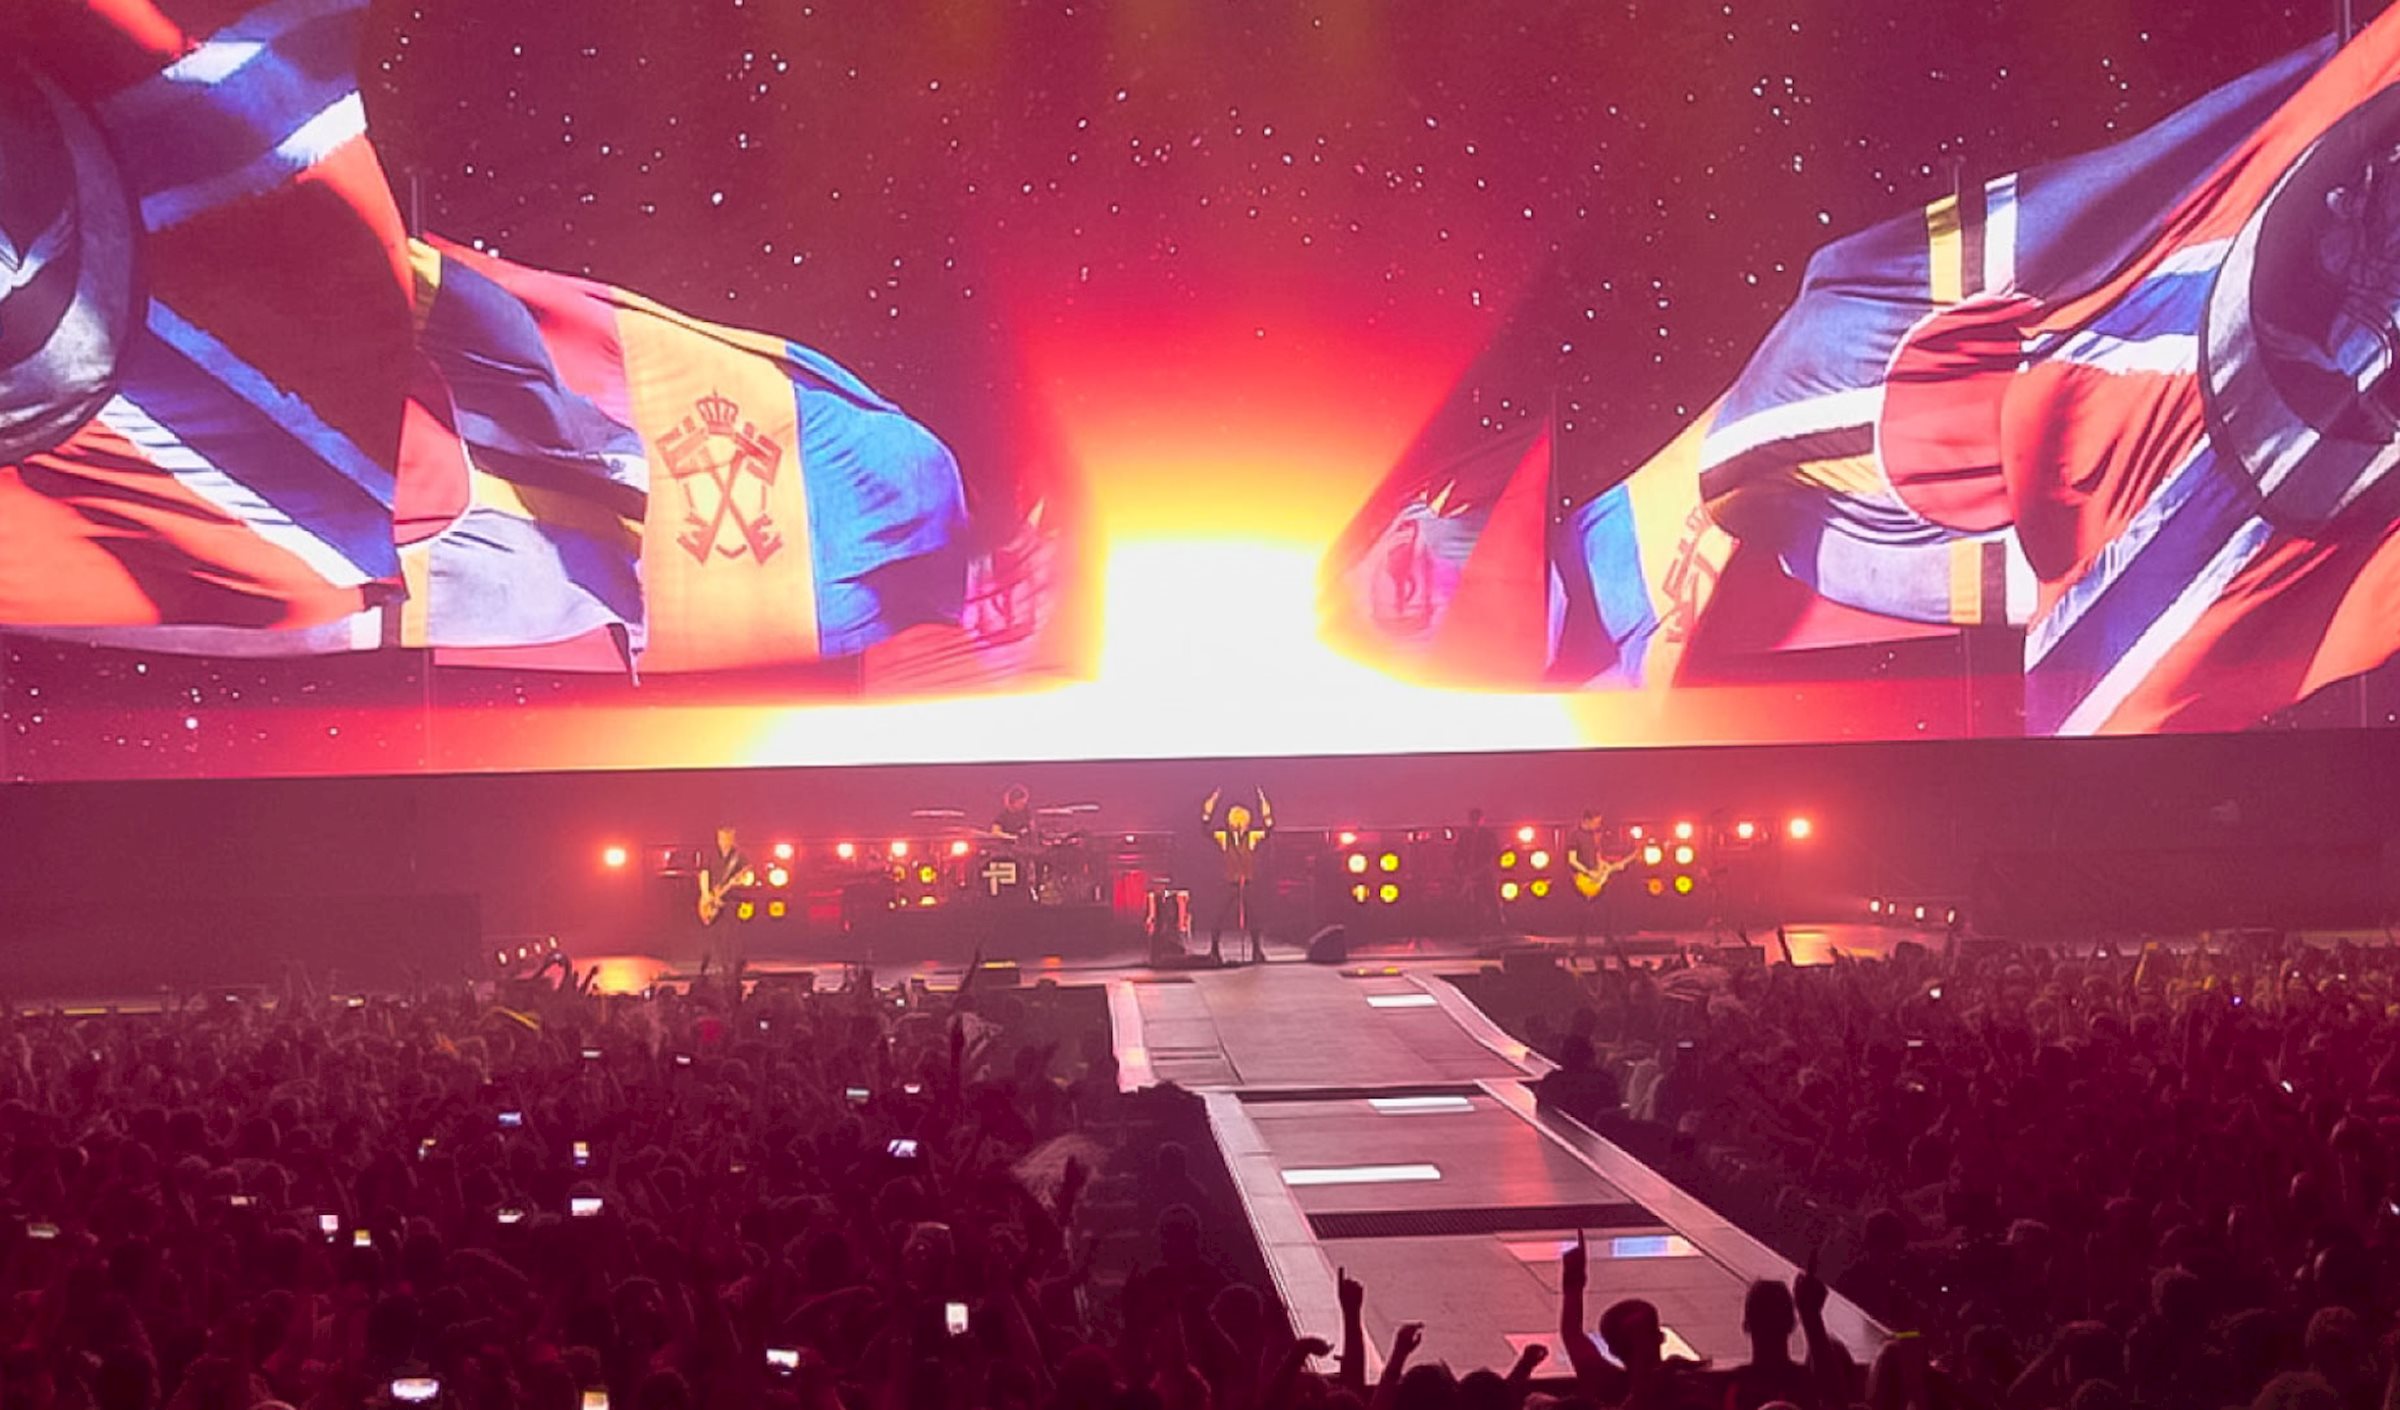 Zur Abschluss-Show der "13 Tour" von Indochine kamen über 50 000 Fans nach Lille, um die immersive Show zu erleben, die von PRG als technischem Dienstleister unterstützt wurde.